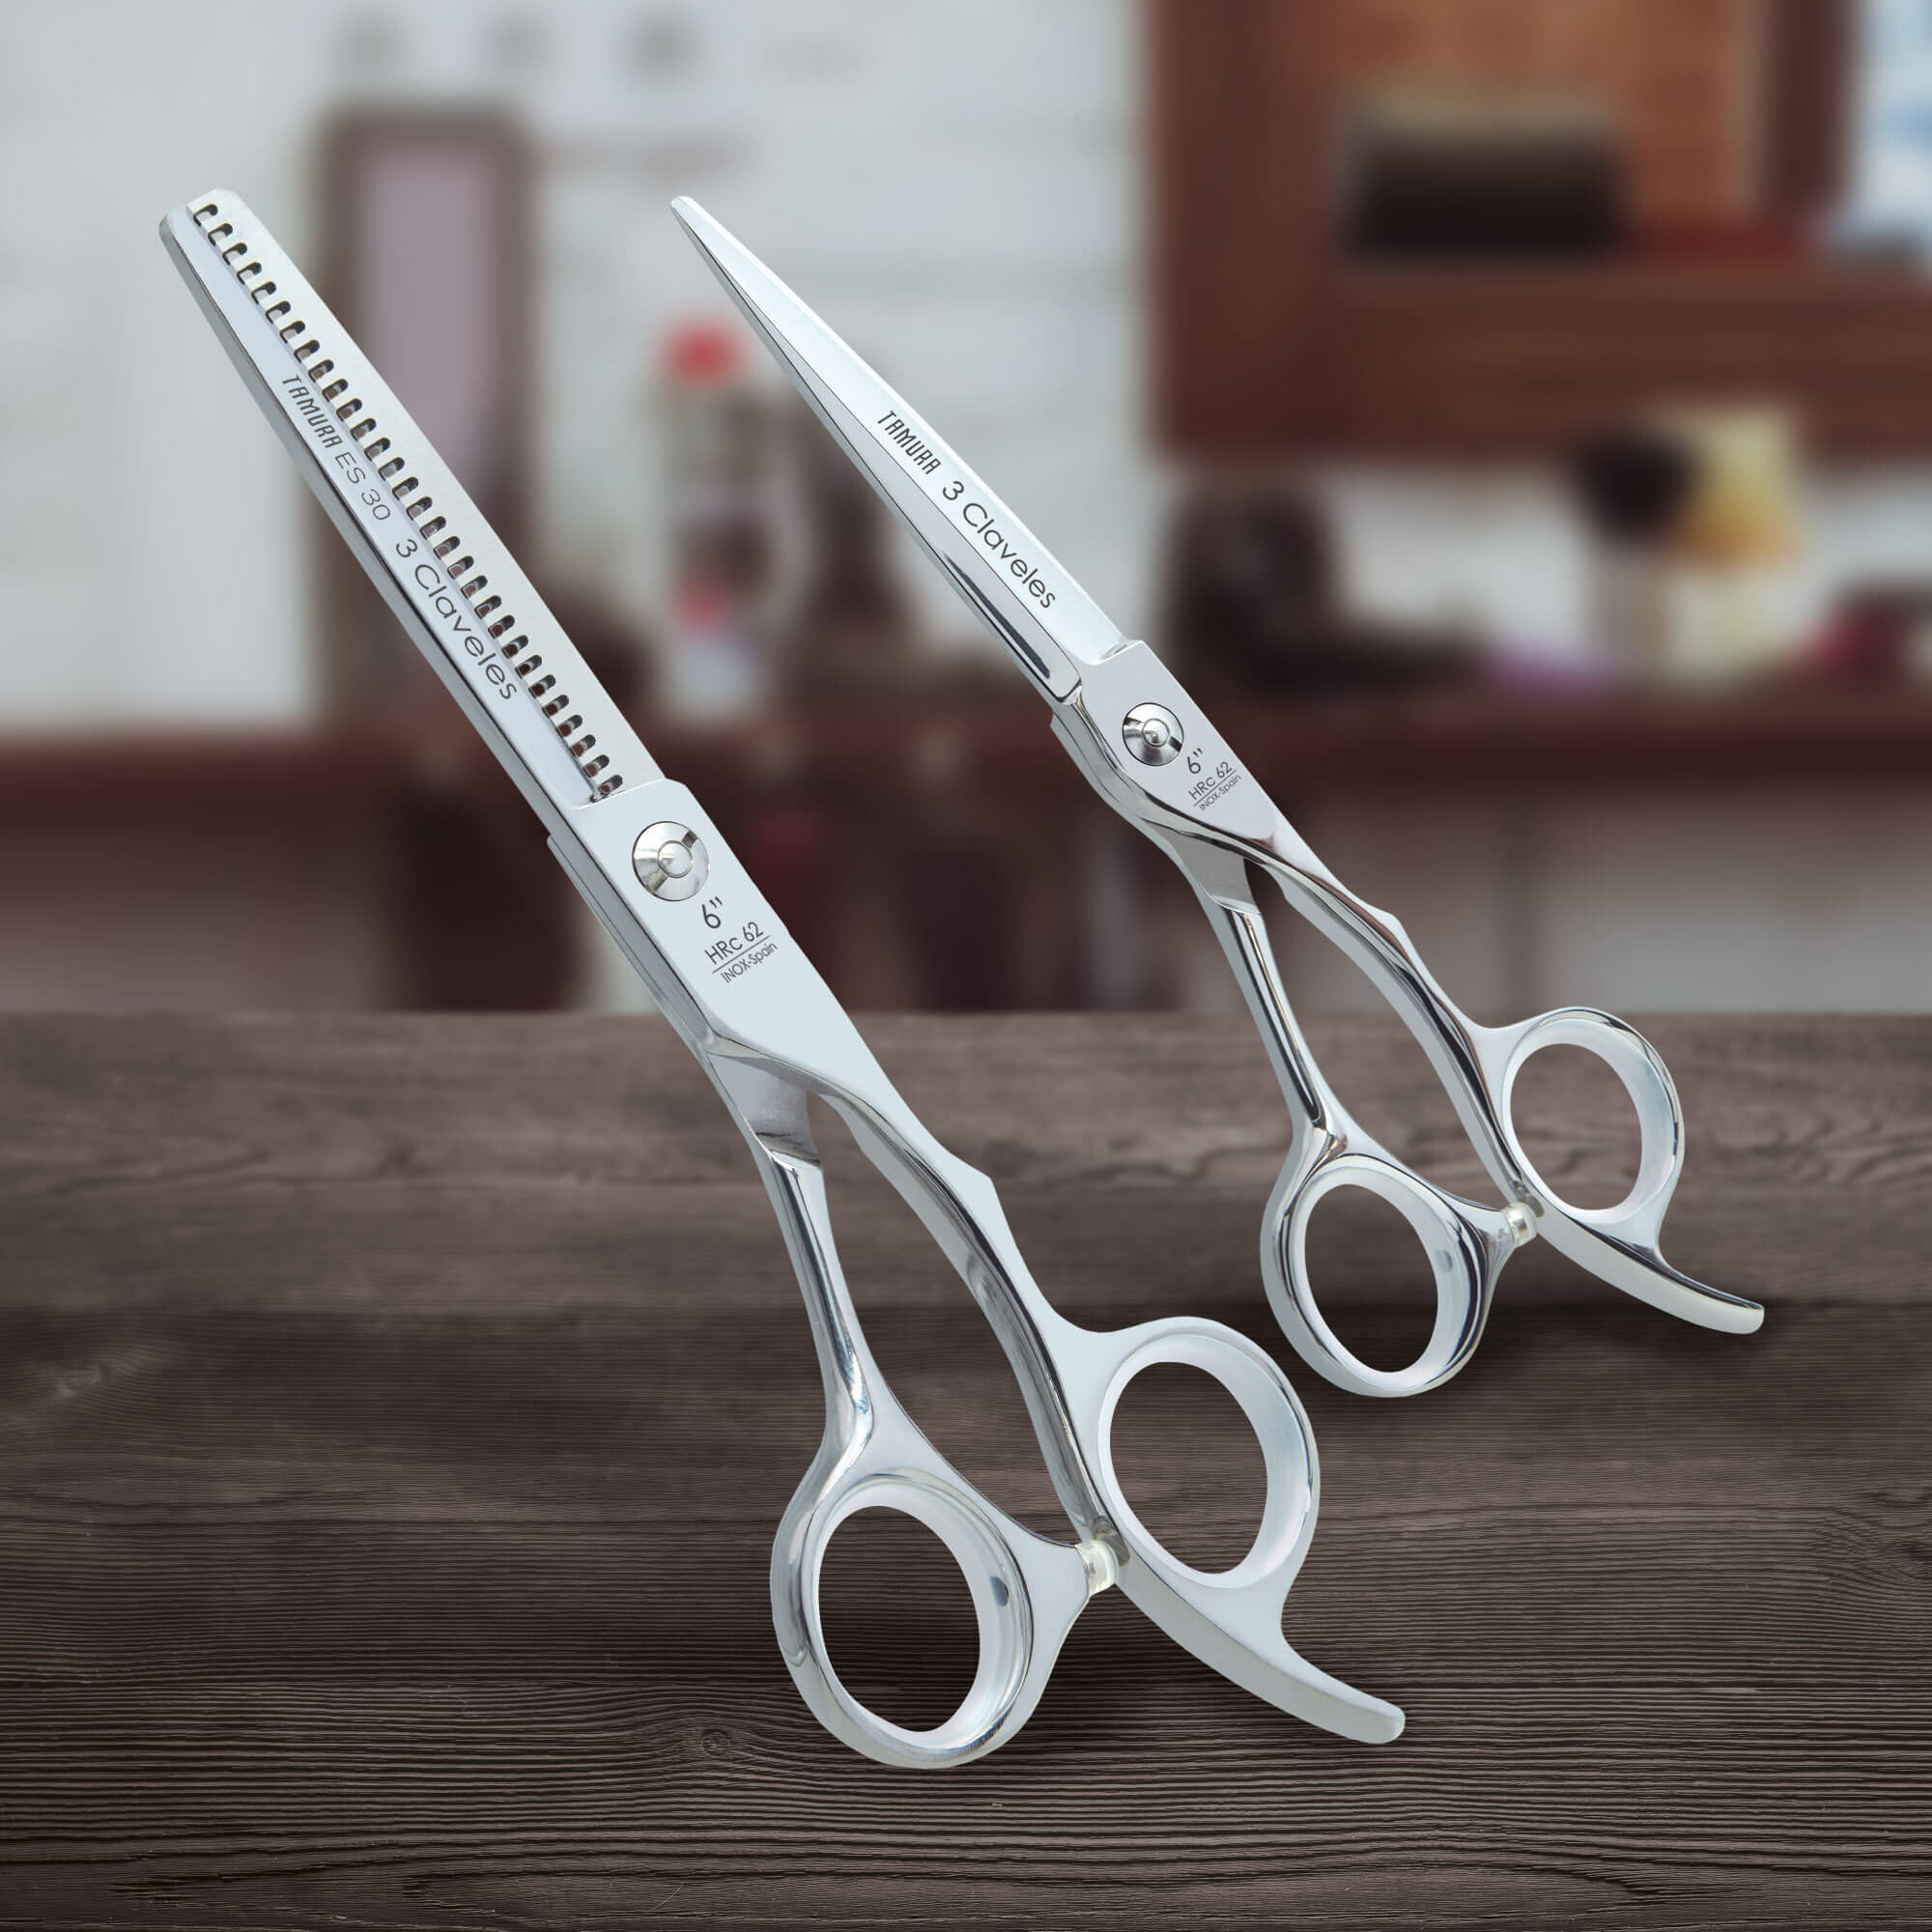 Professional hairdressing scissors 3 Claveles